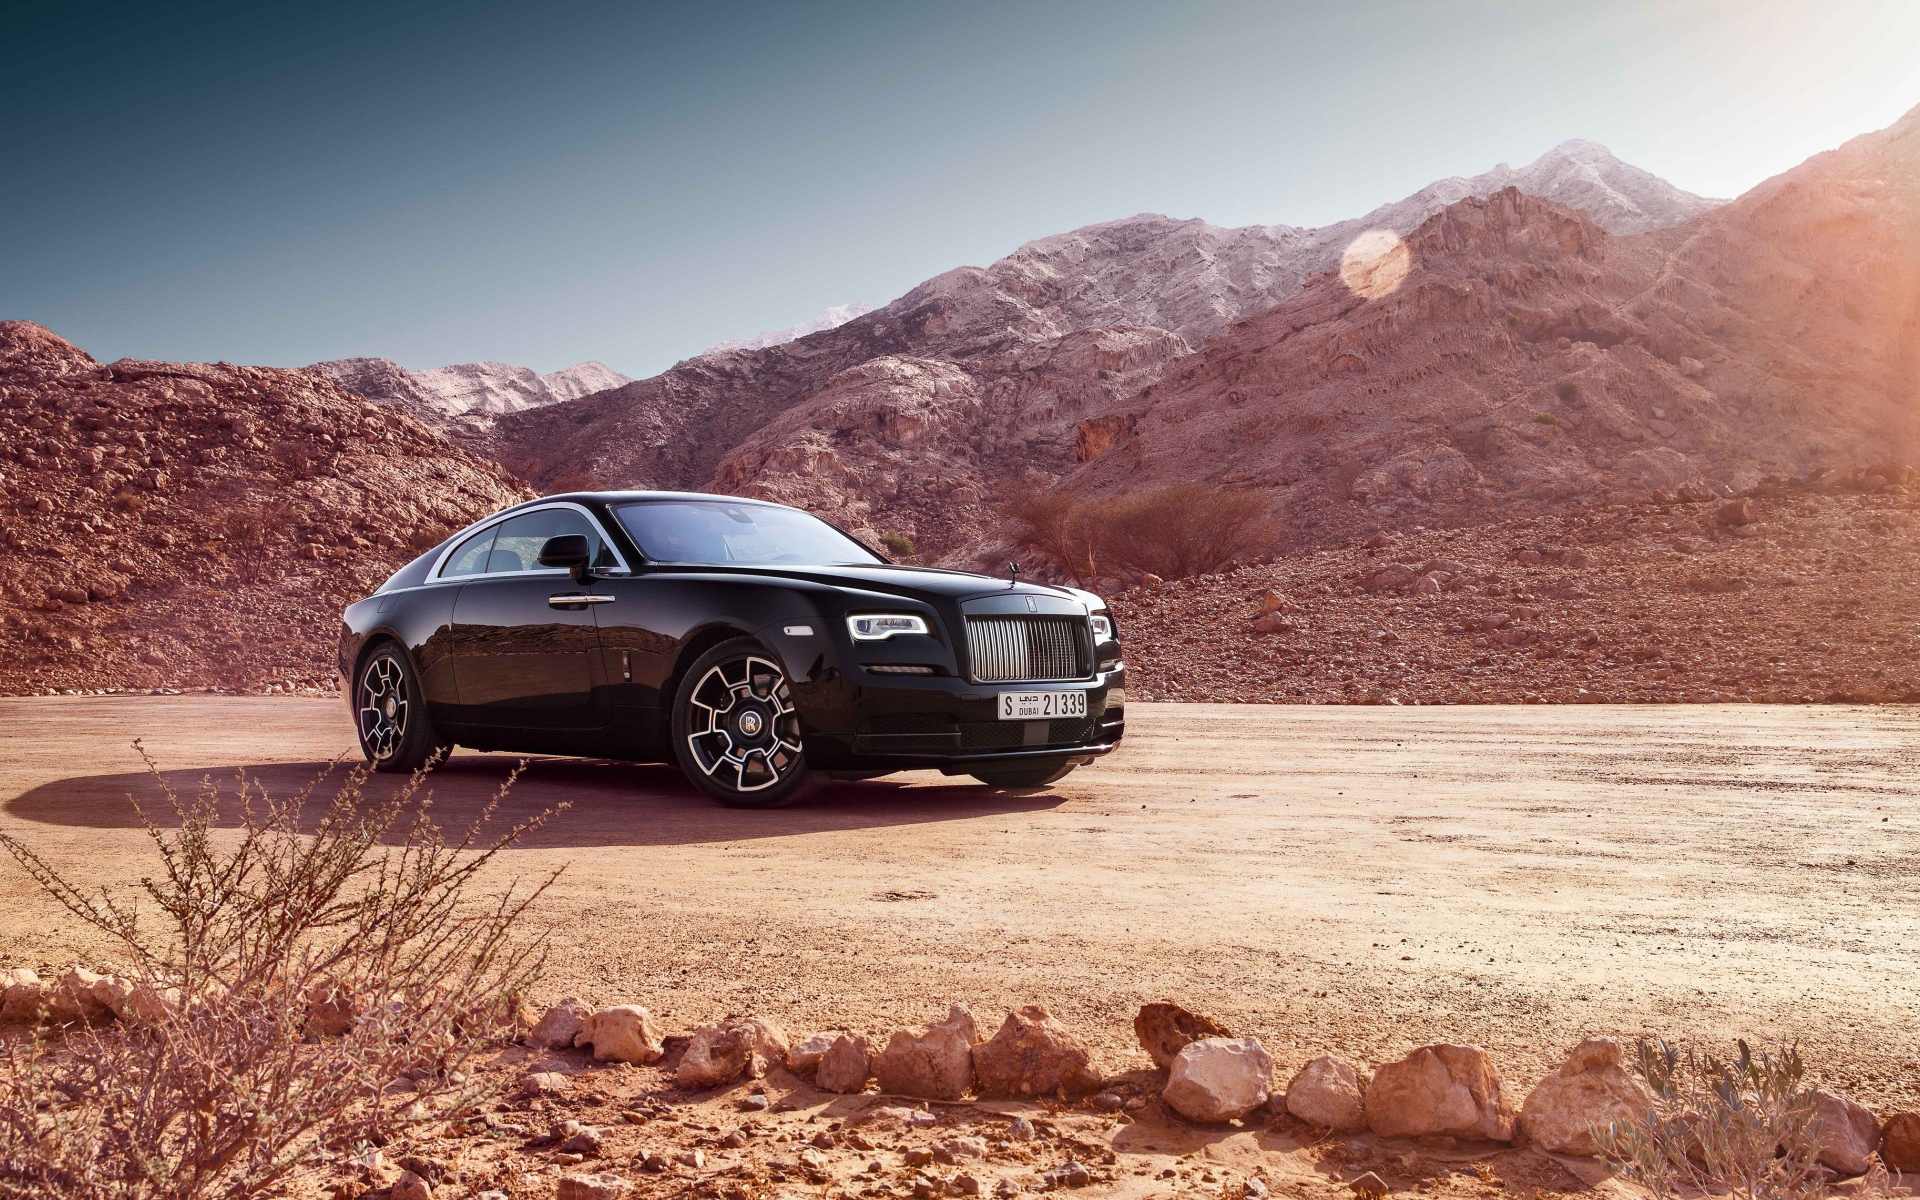 Стильный автомобиль Rolls Royce Wraith Black Badge на фоне гор